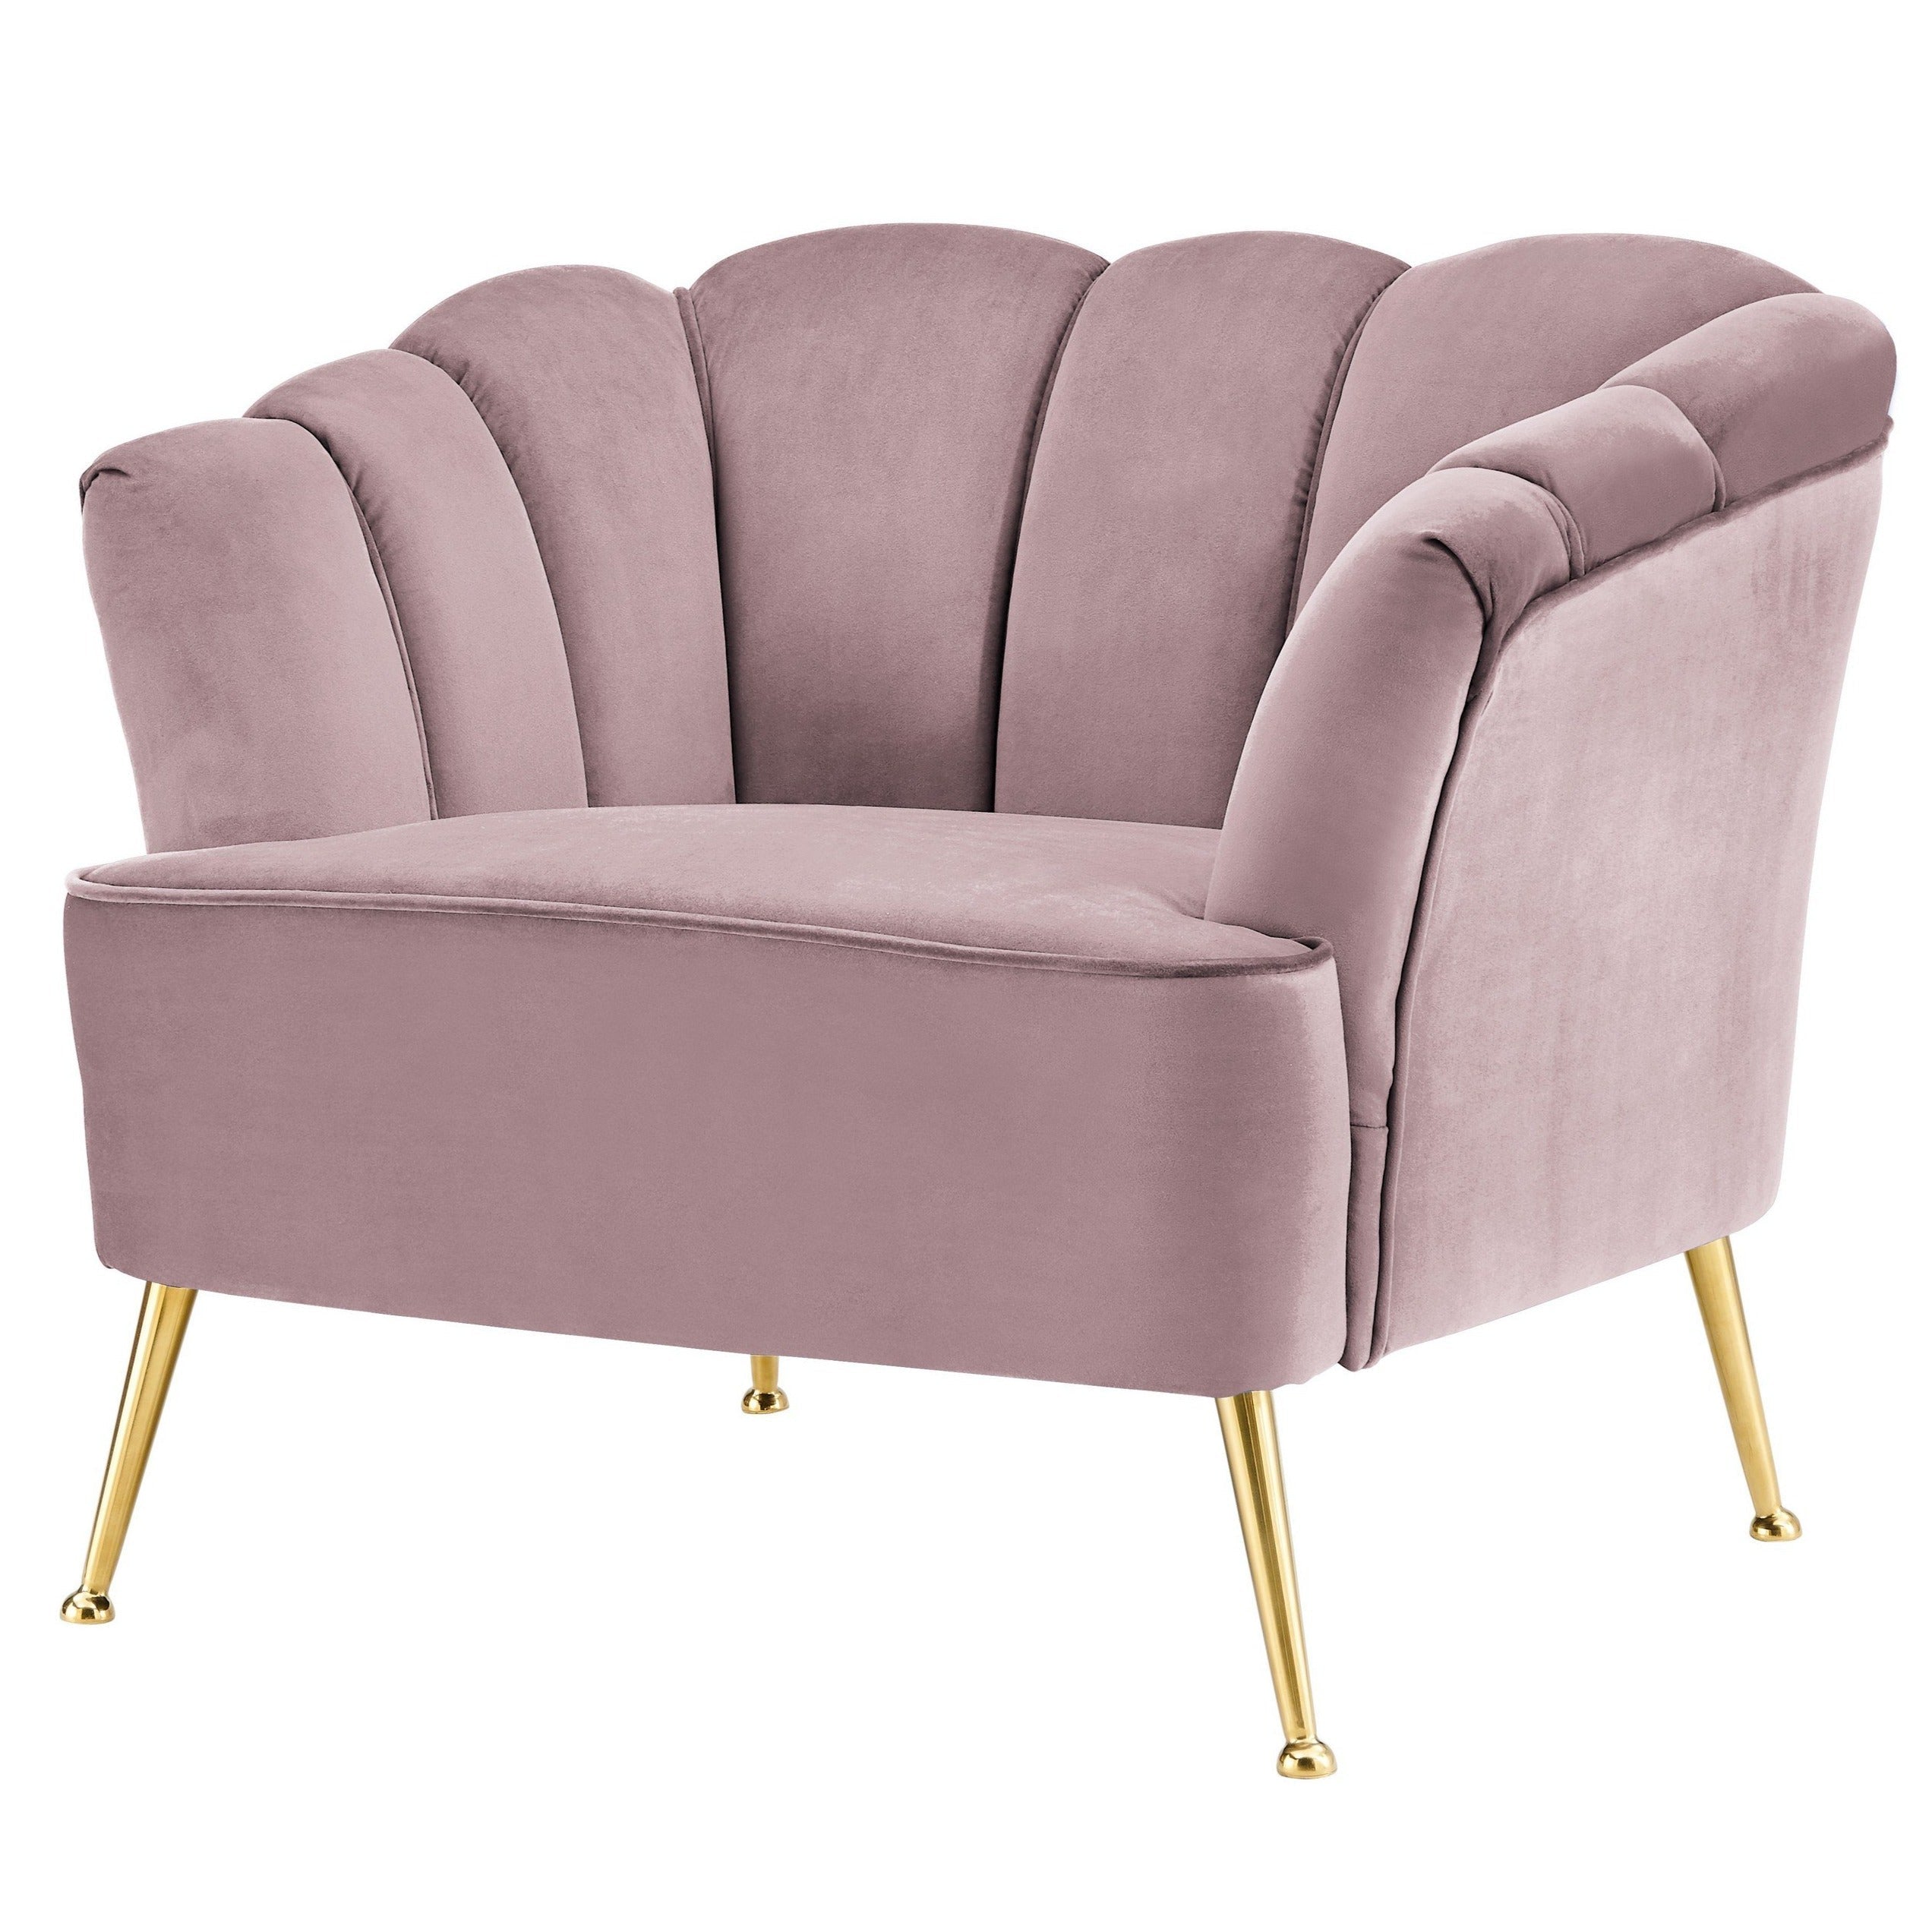 Aisha Velvet Club Chair With Gold Legs